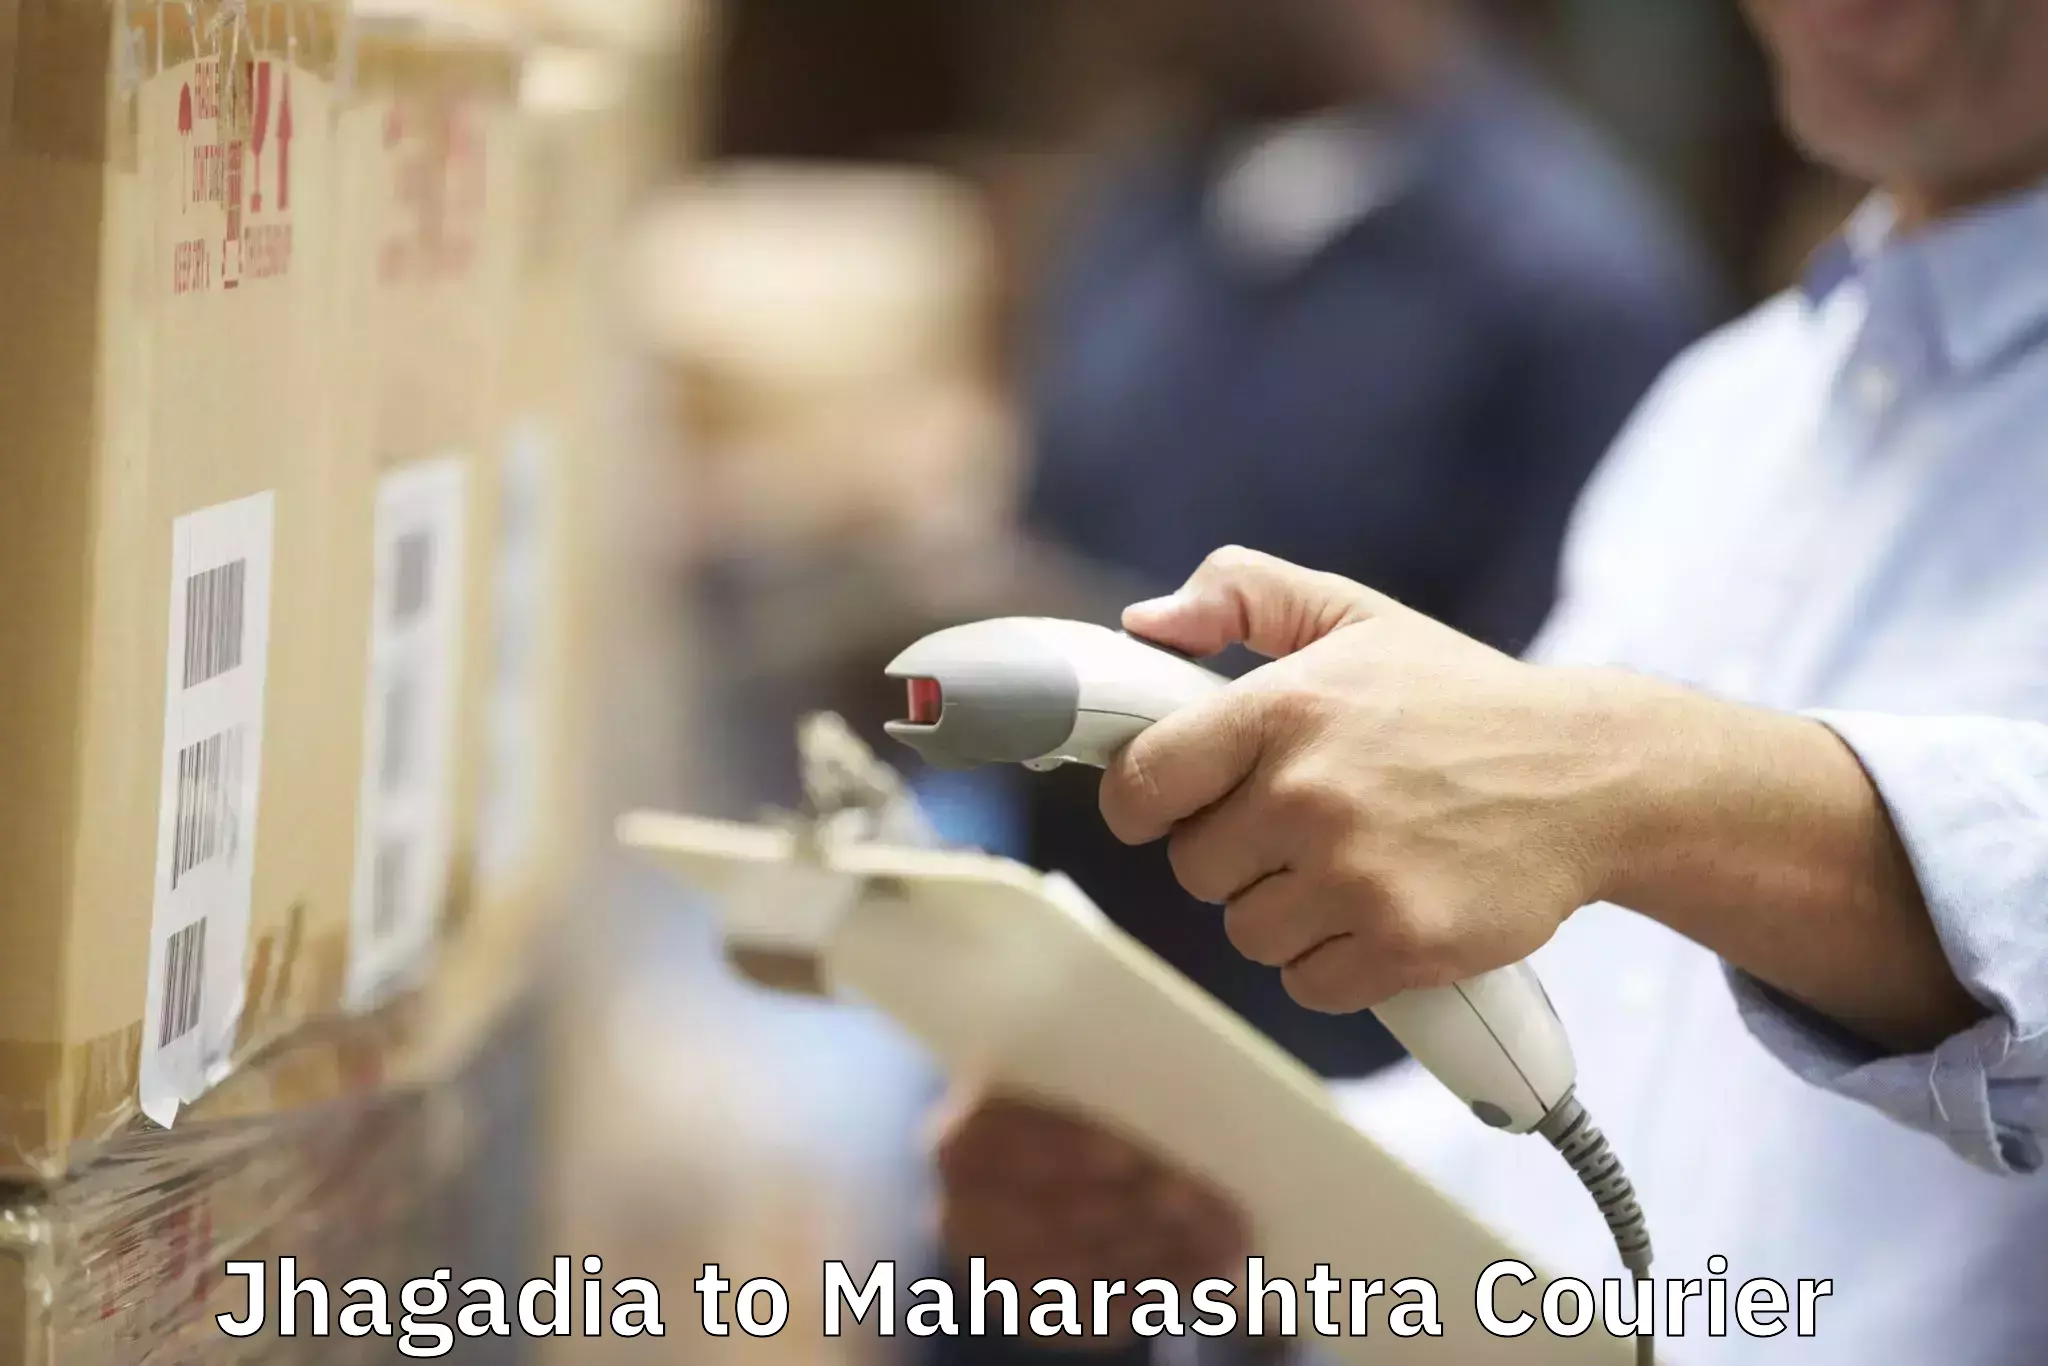 Professional moving strategies Jhagadia to Maharashtra